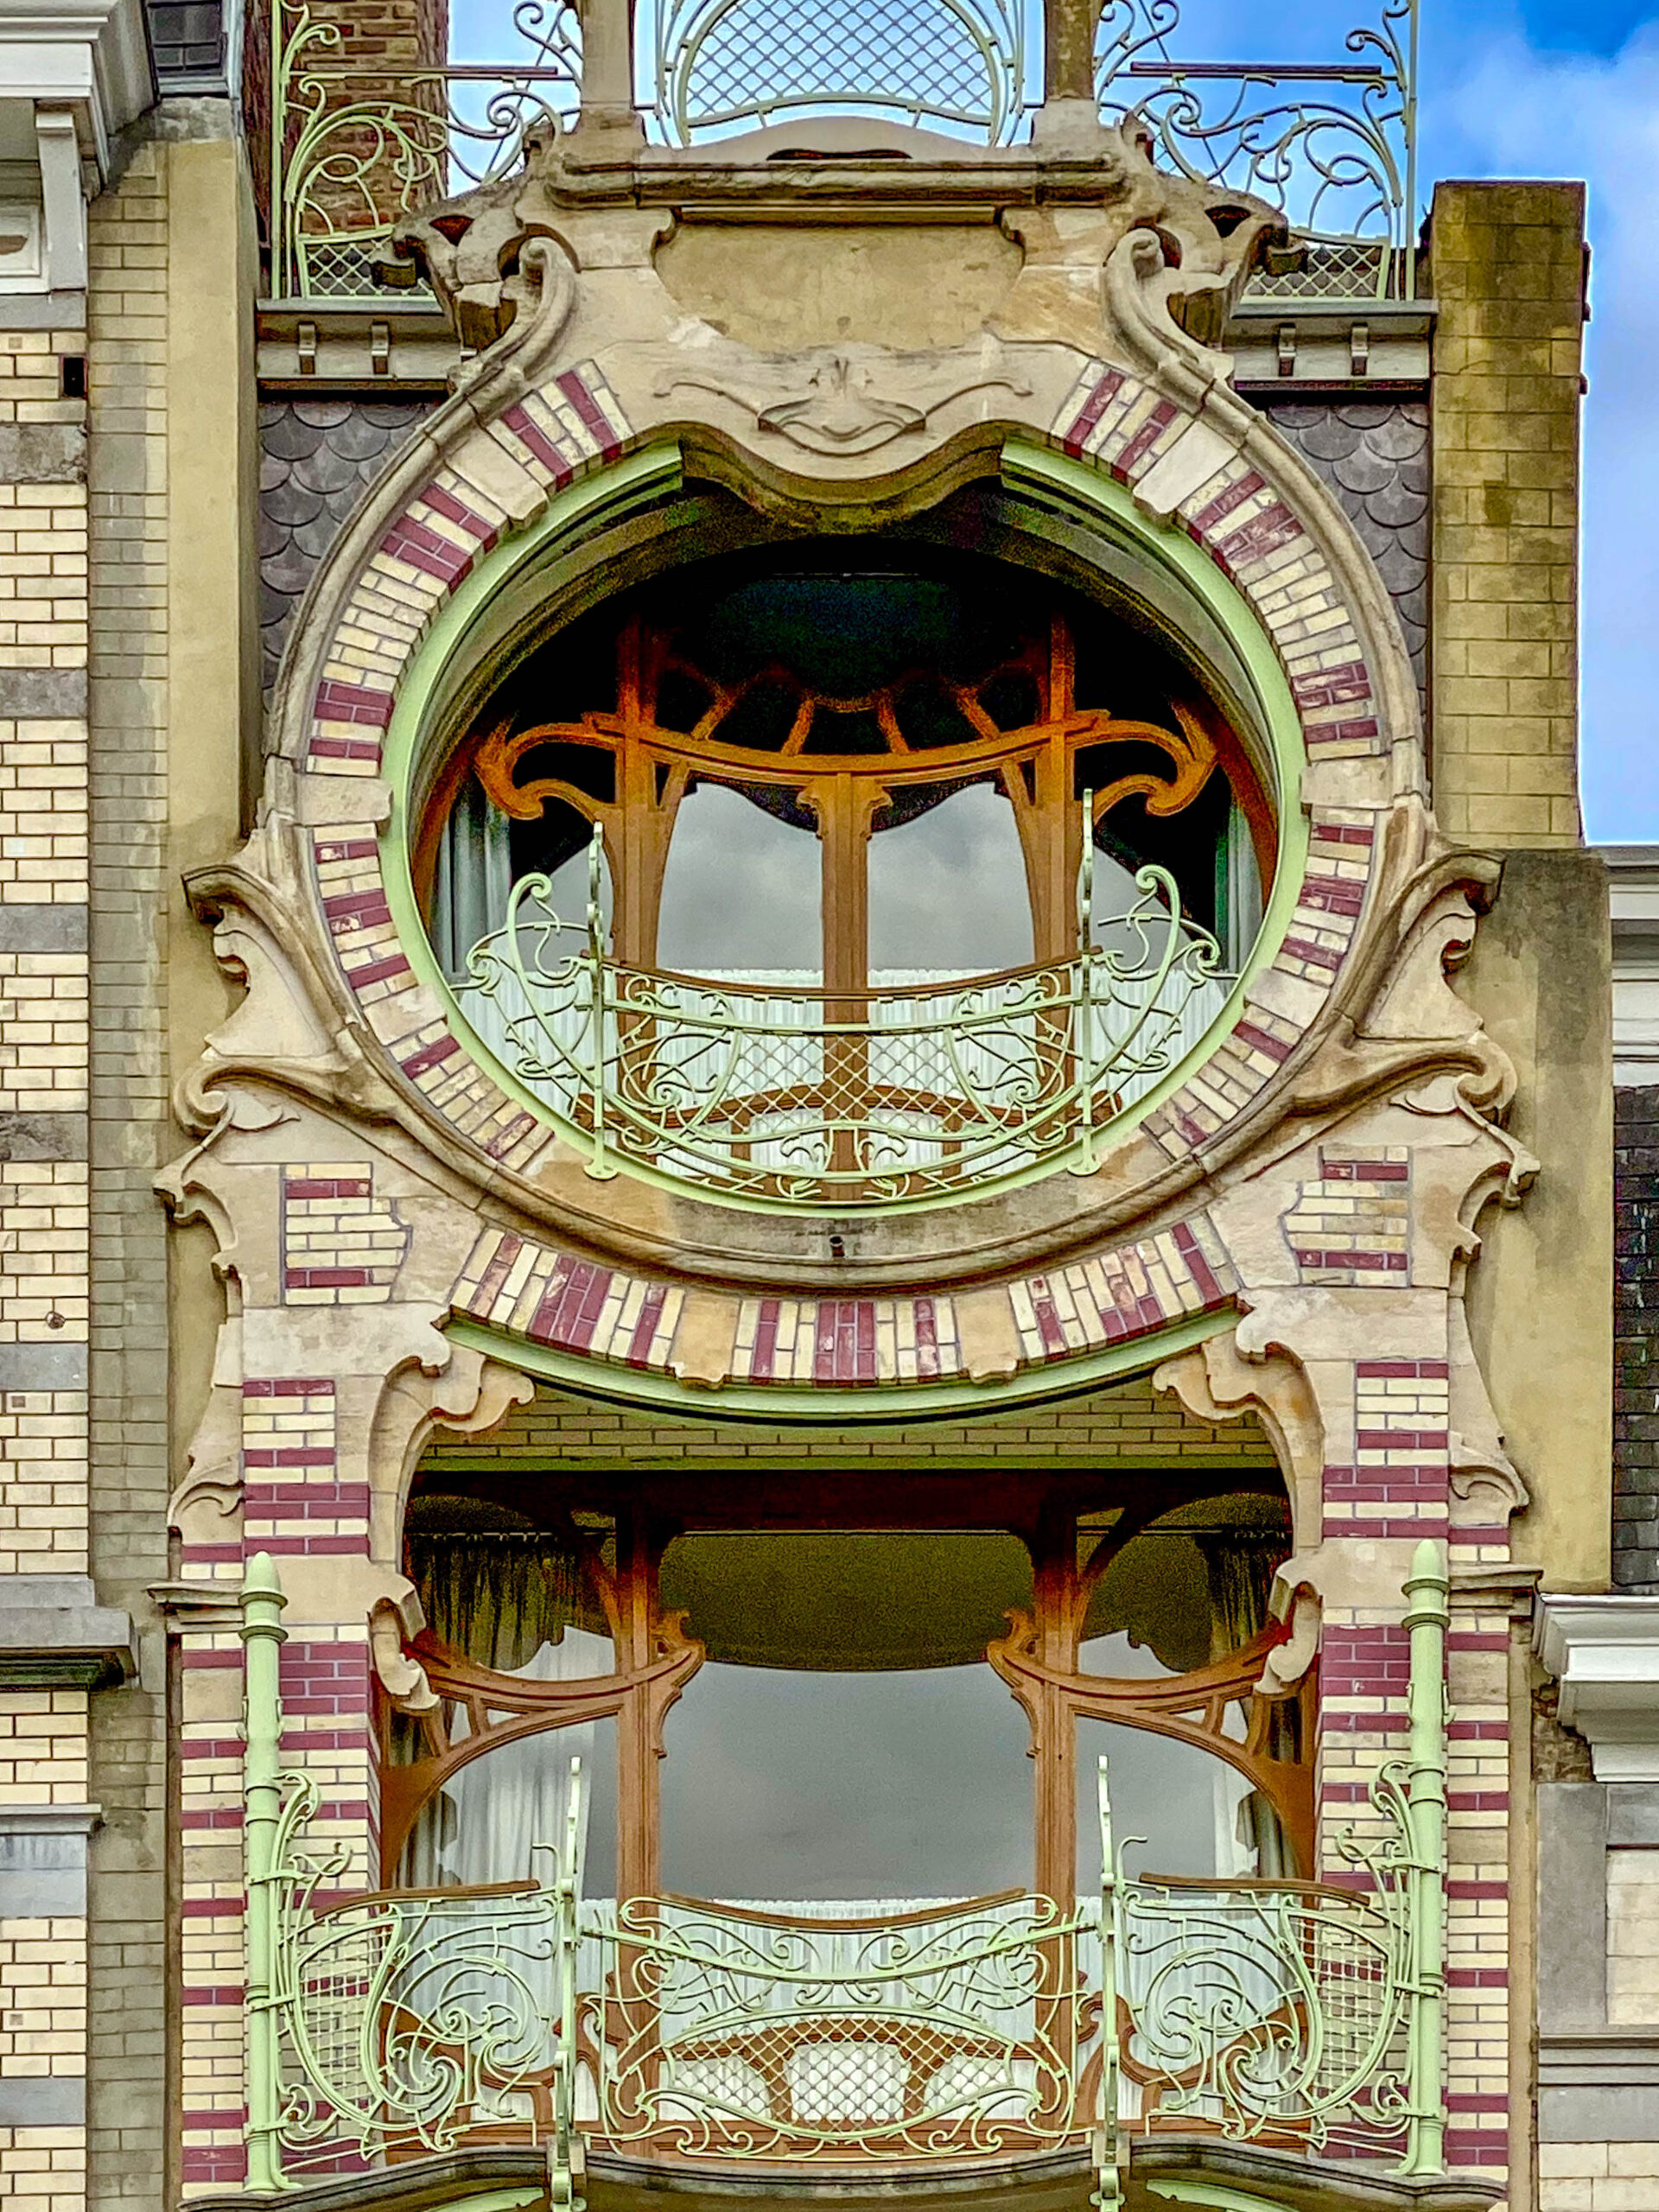 Maison Saint-Cyr, 1901-1903. Architect: Gustave Strauven